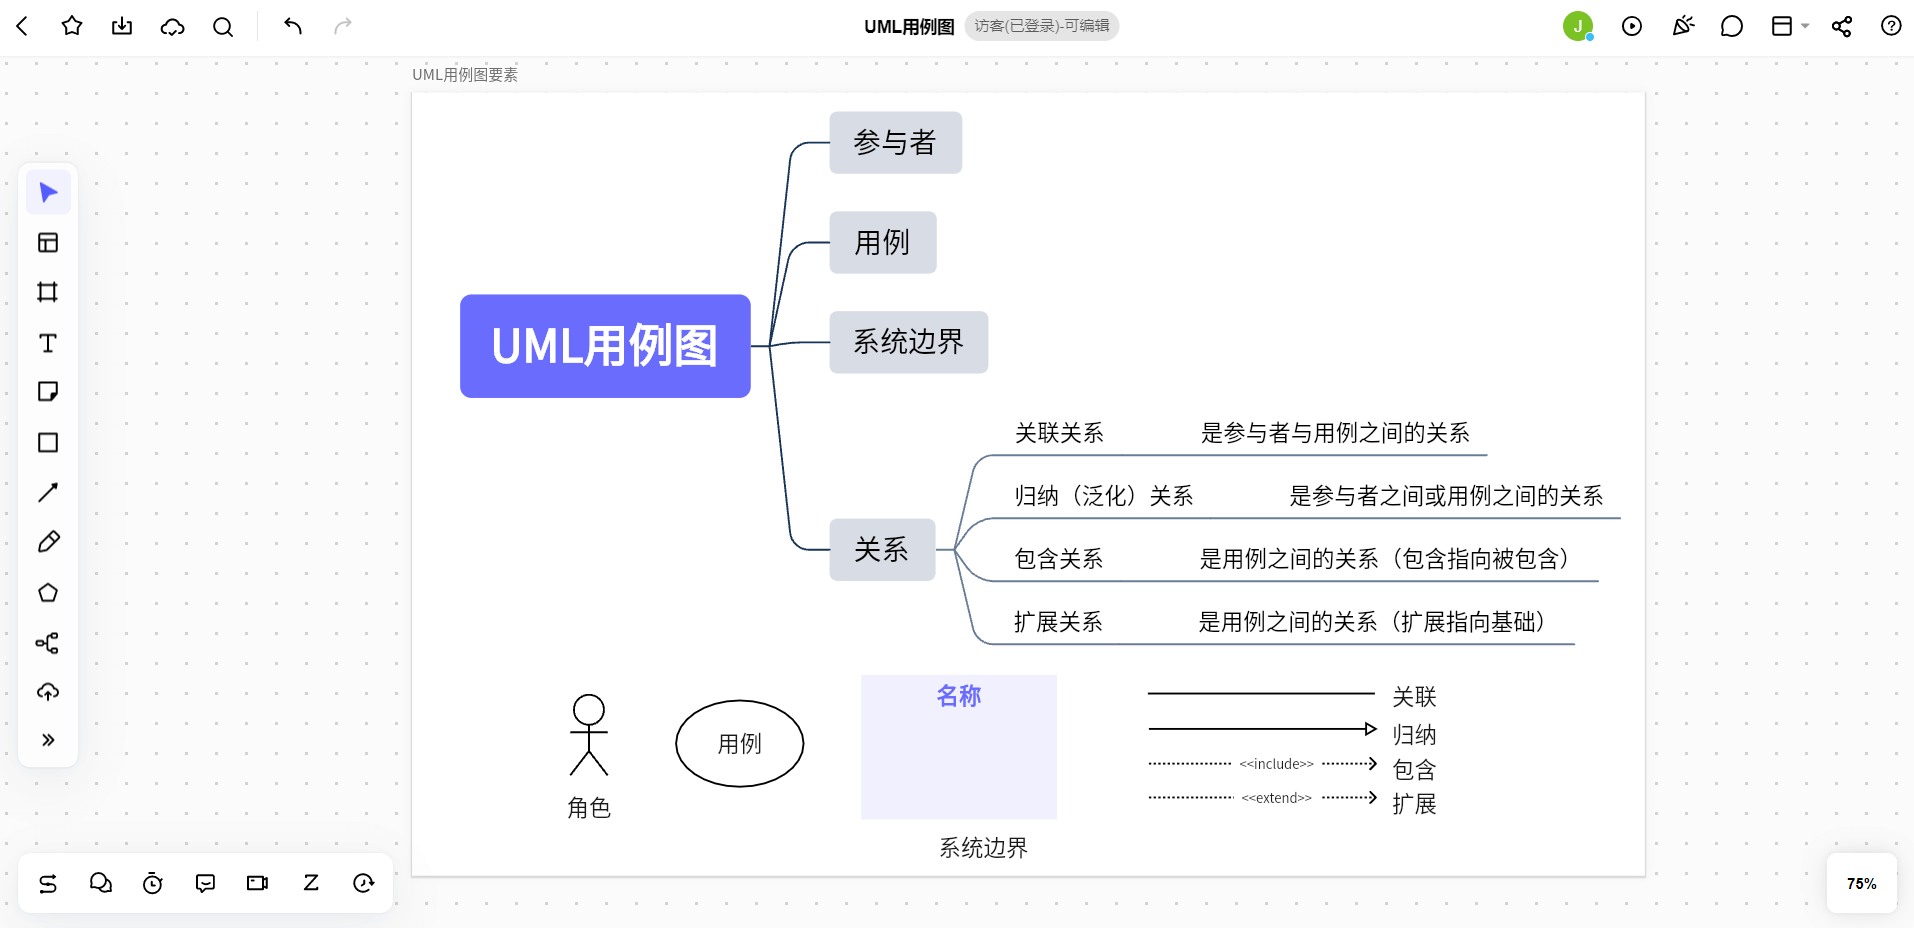 UML用例图基本语法